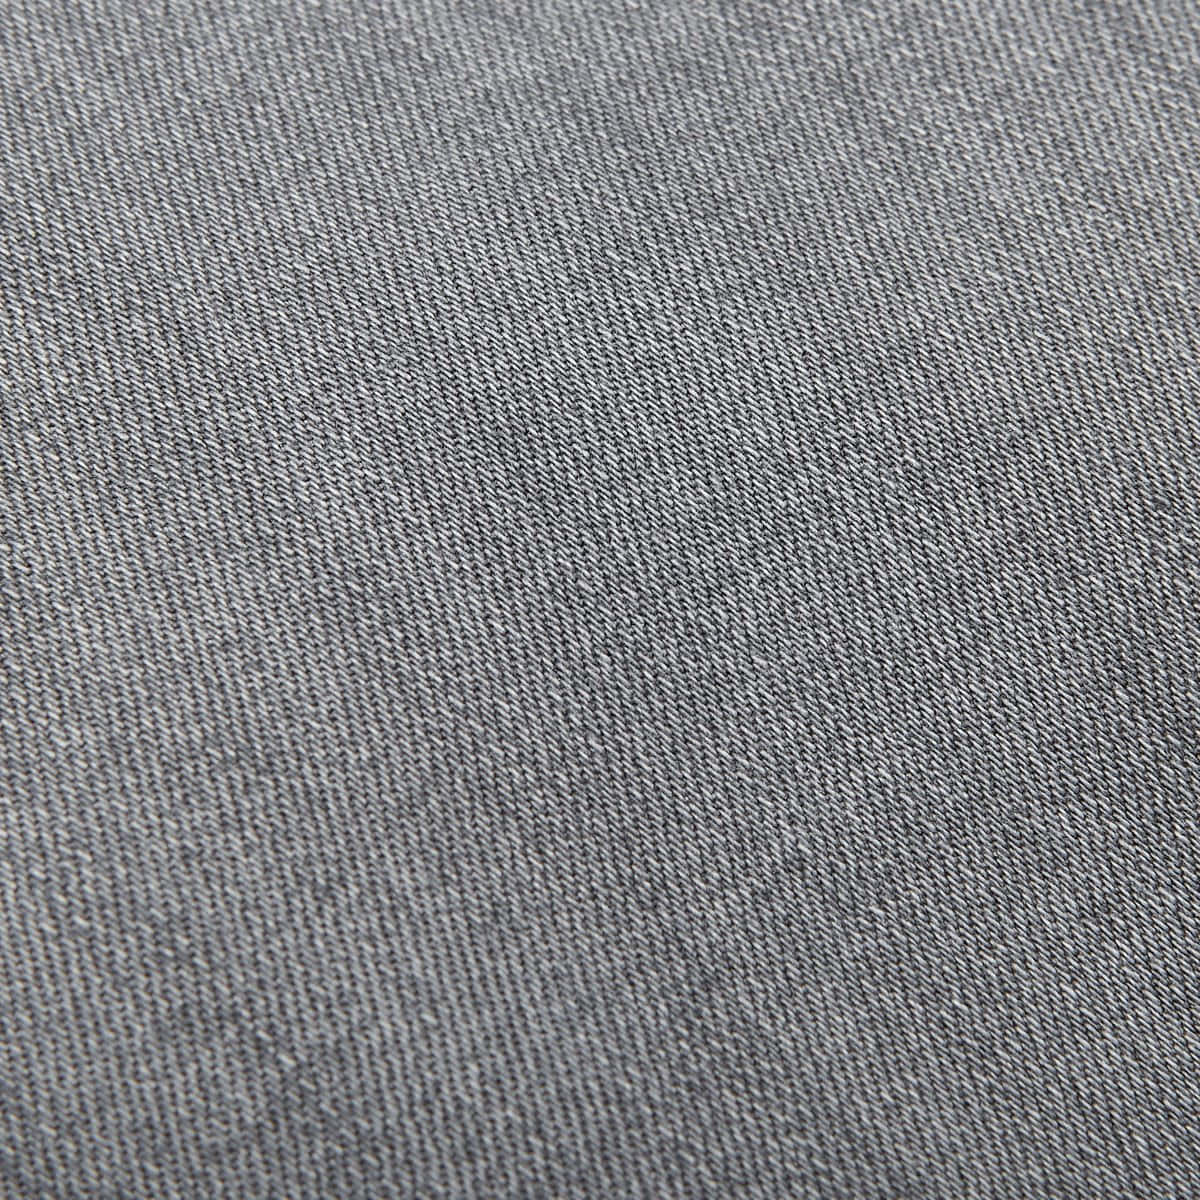 Gray Denim Fabirc Texture Wallpaper